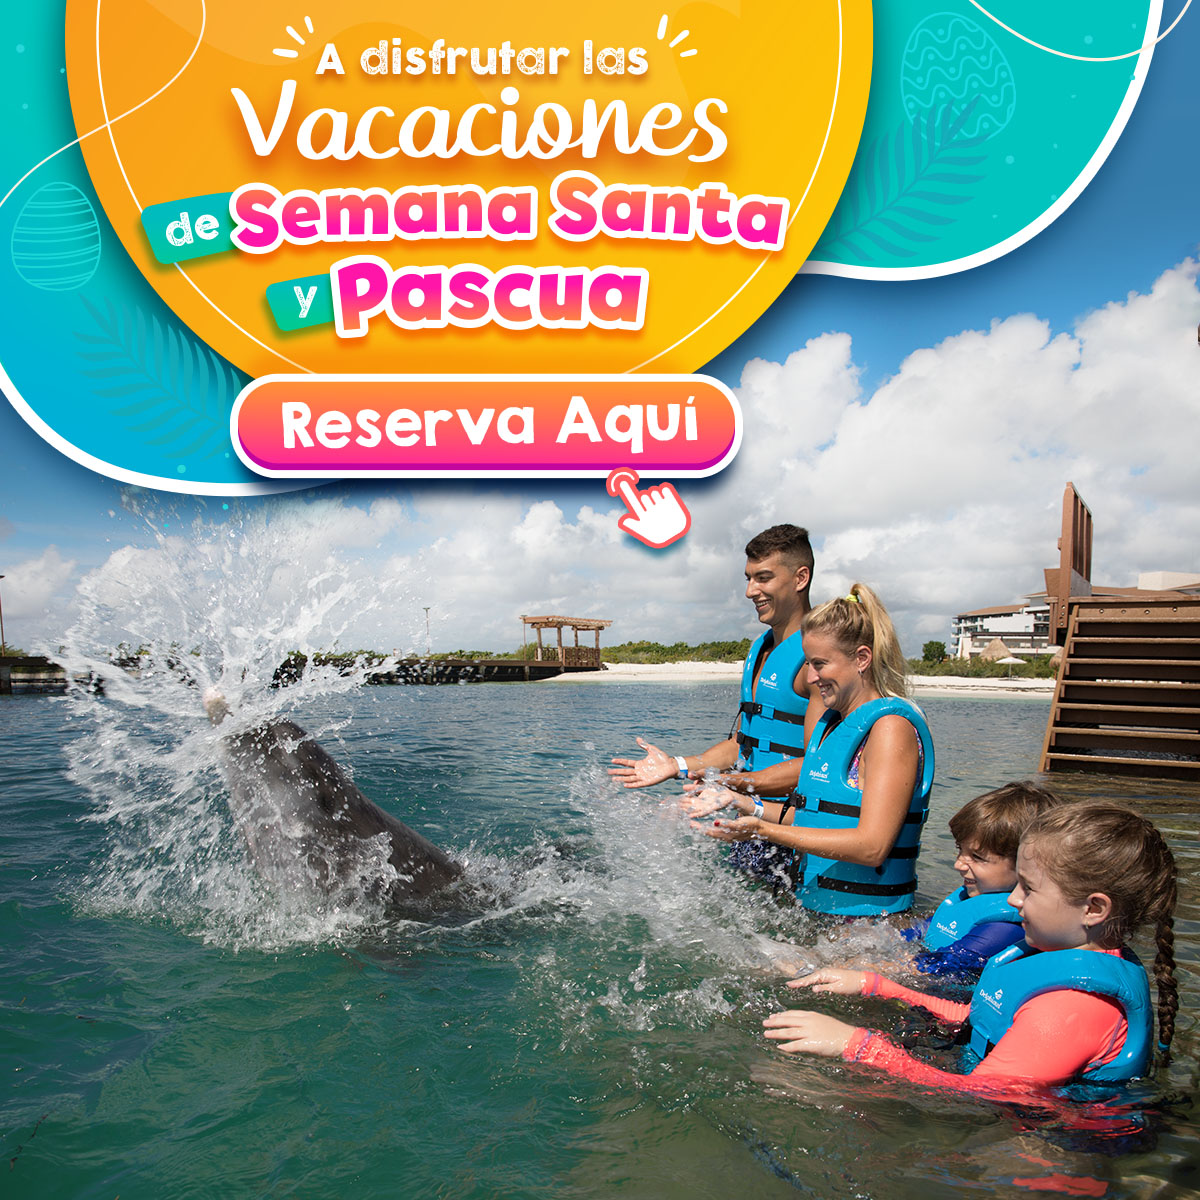 Nado con delfines semana santa cancun riviera maya